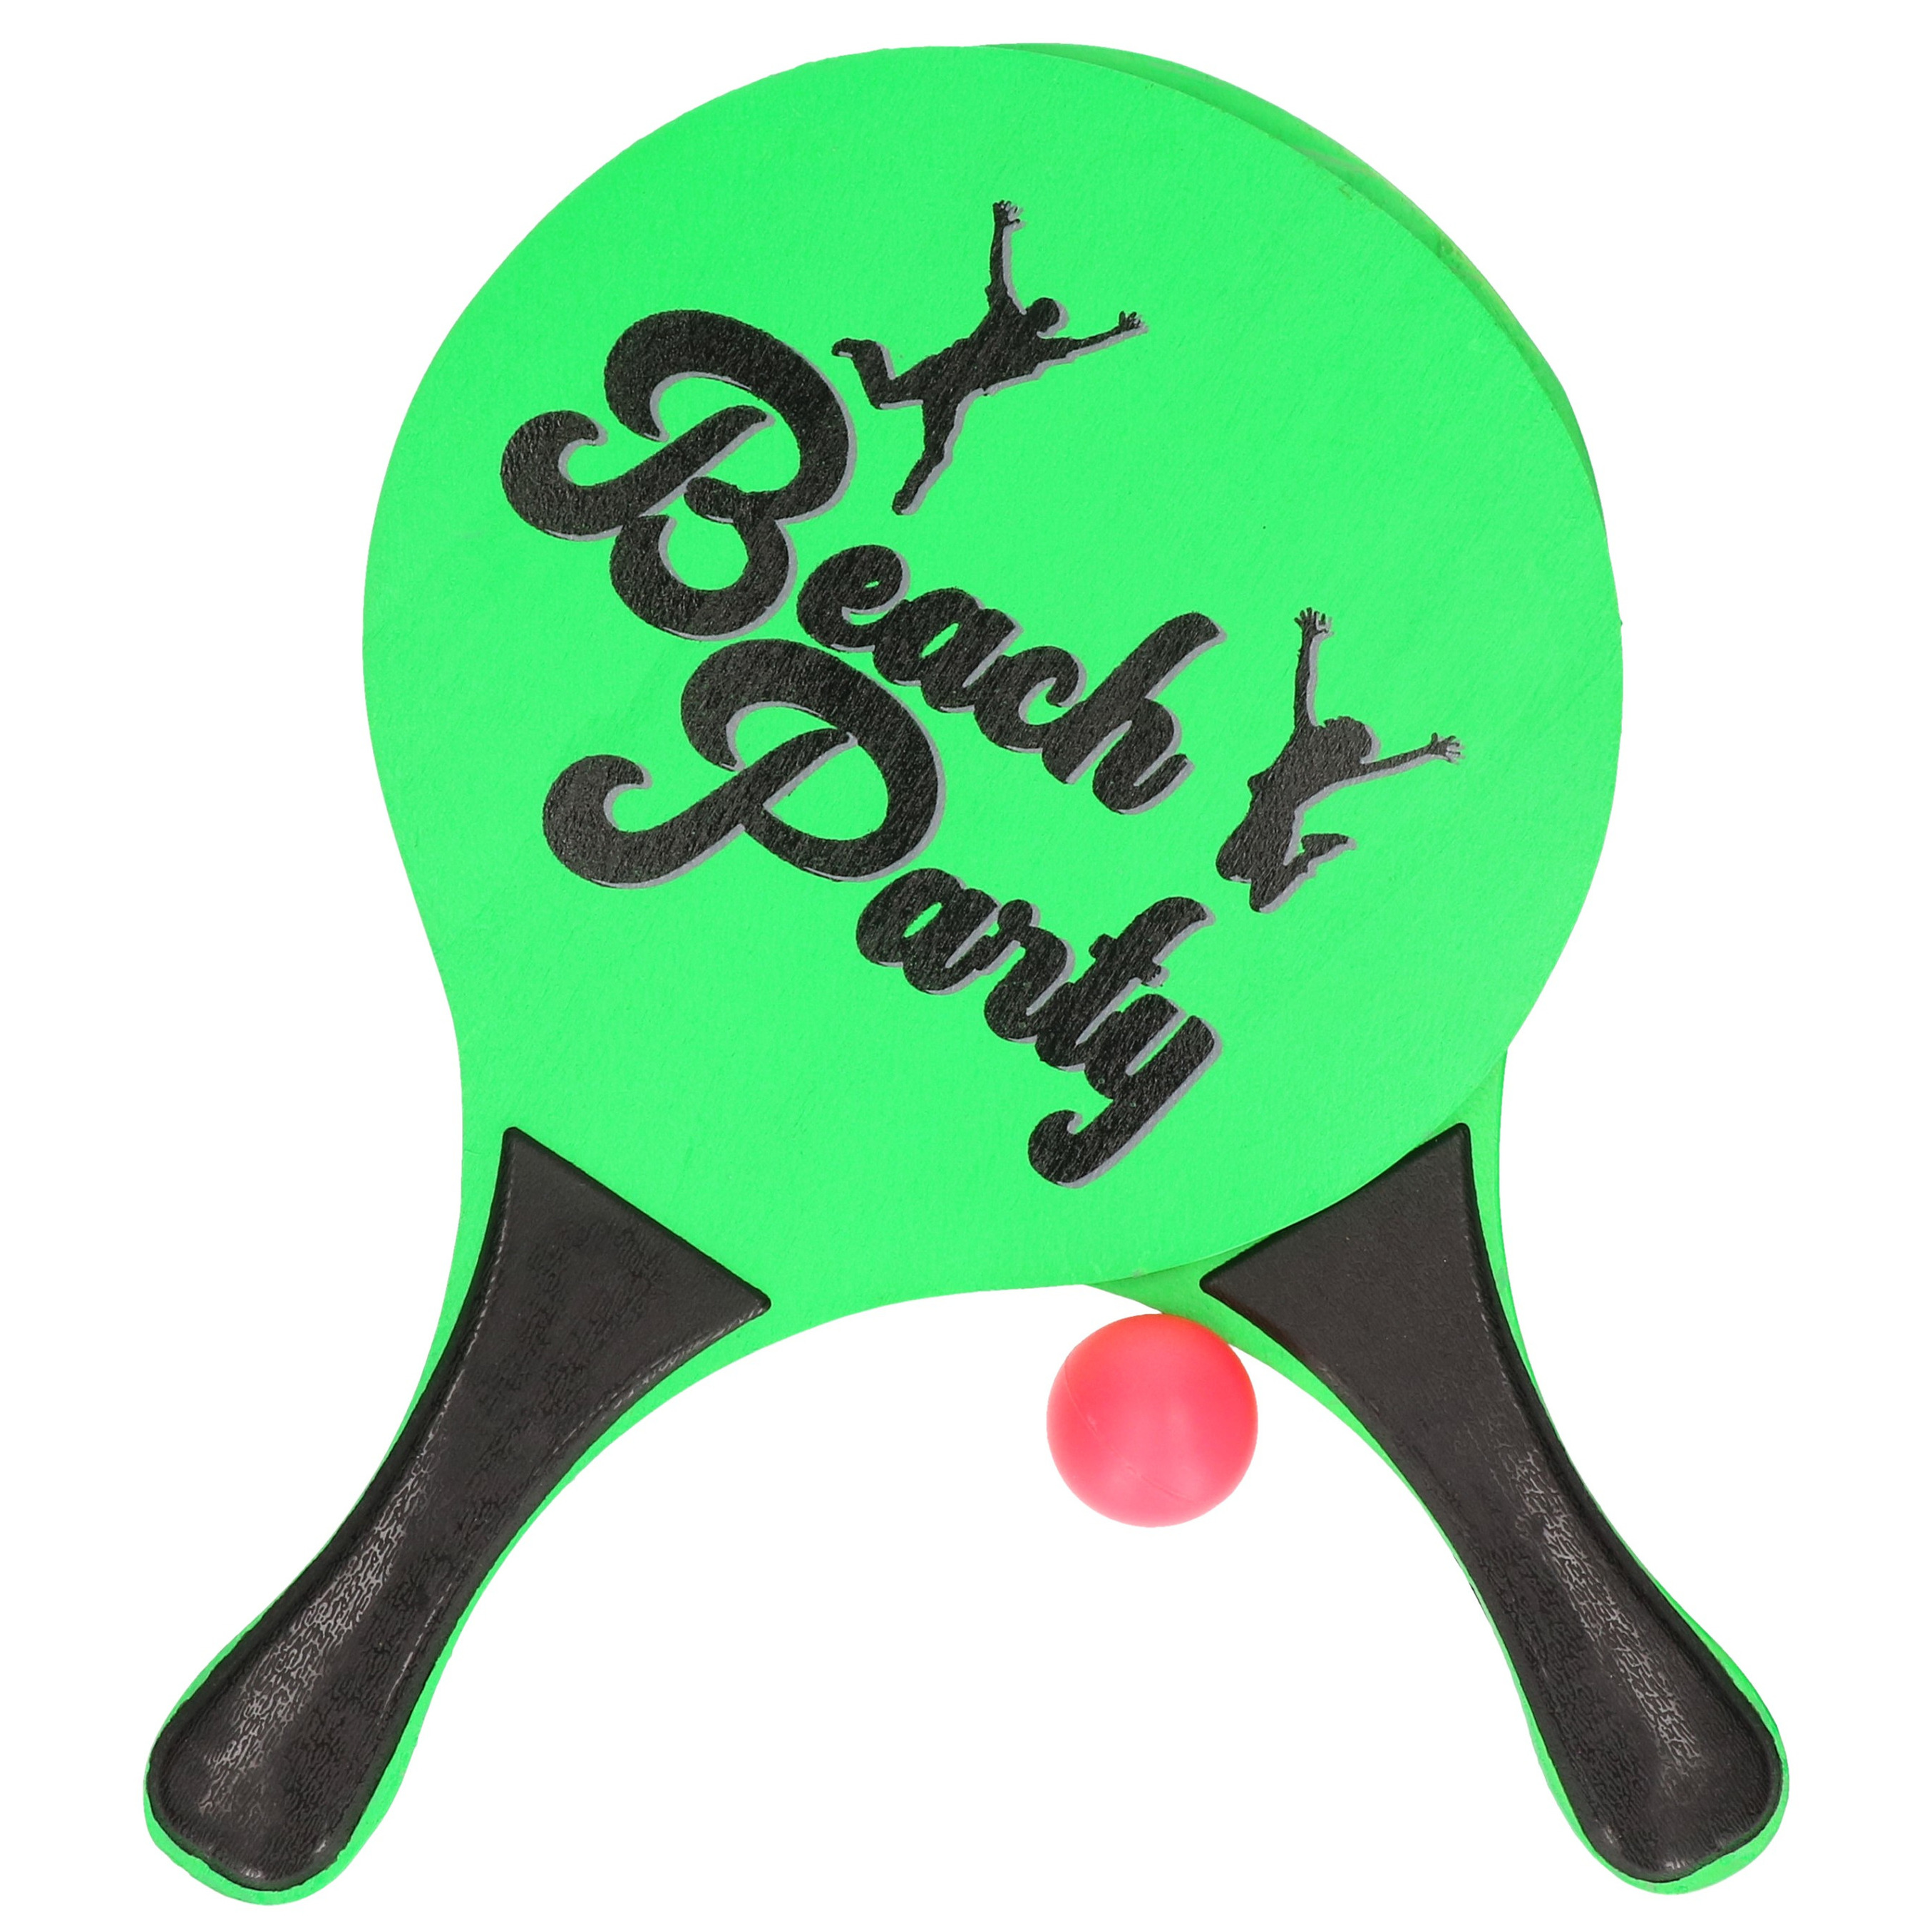 Actief speelgoed tennis-beachball setje groen